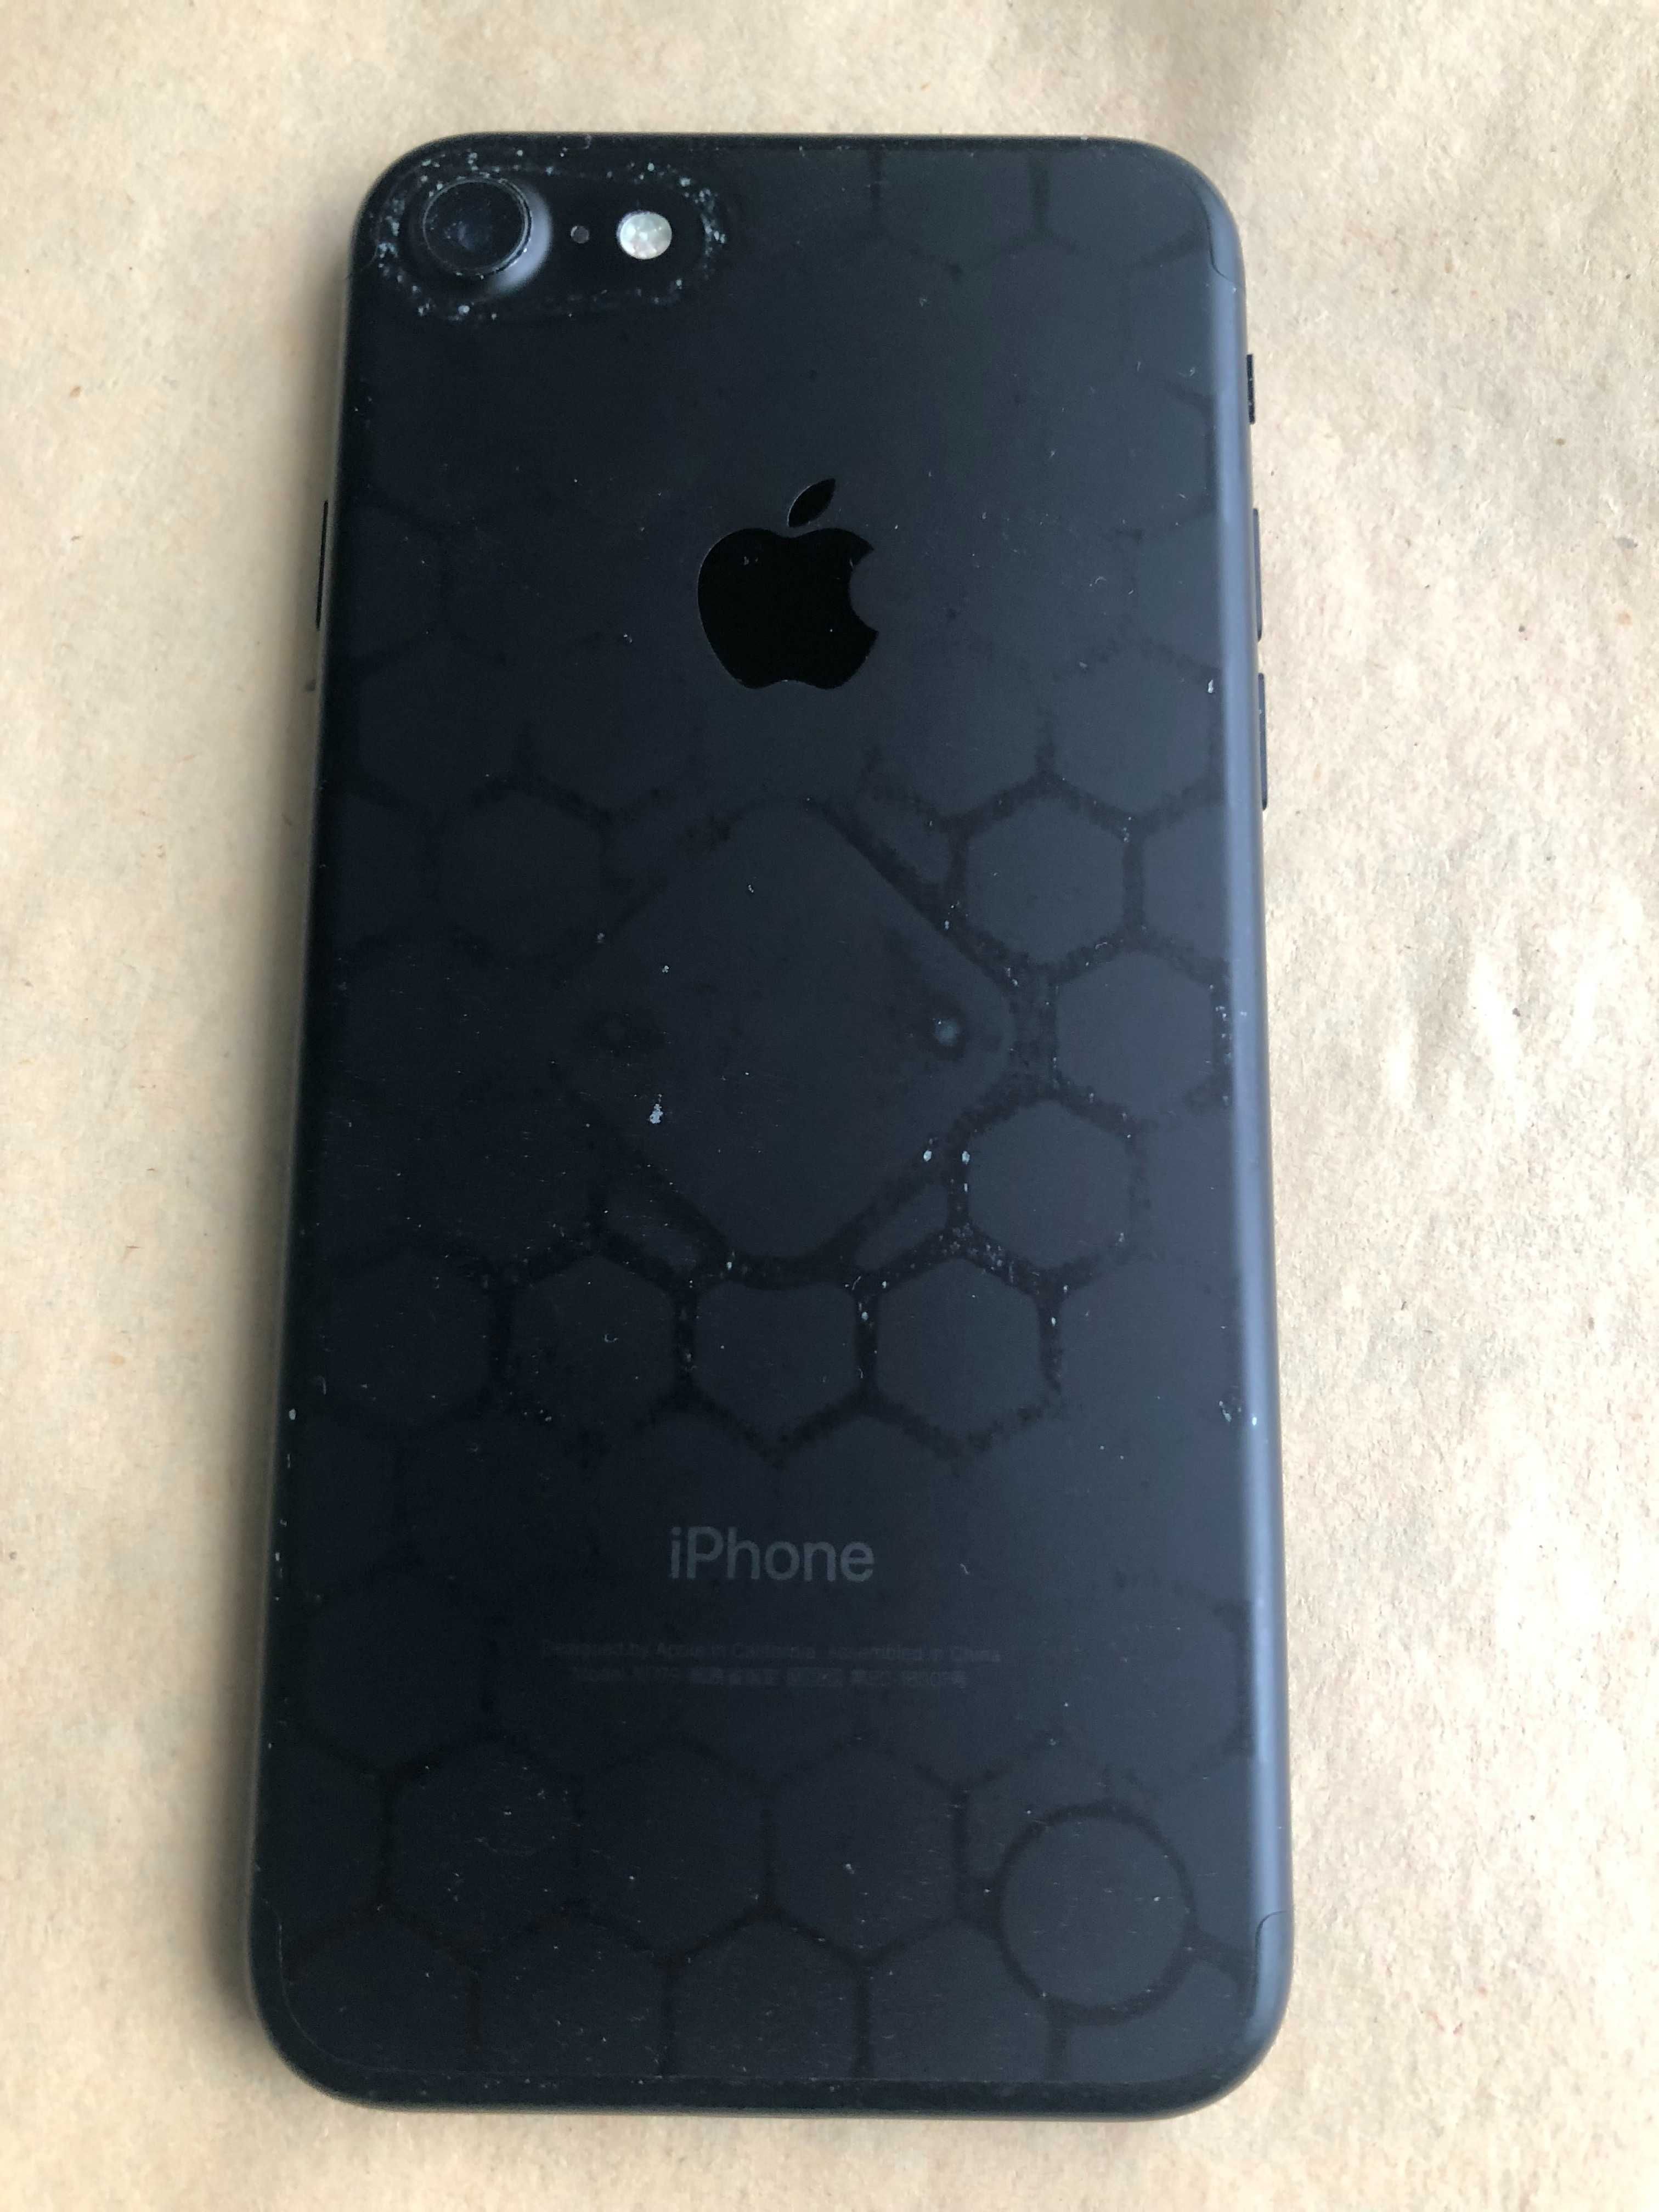 IPhone 7 32Gb black